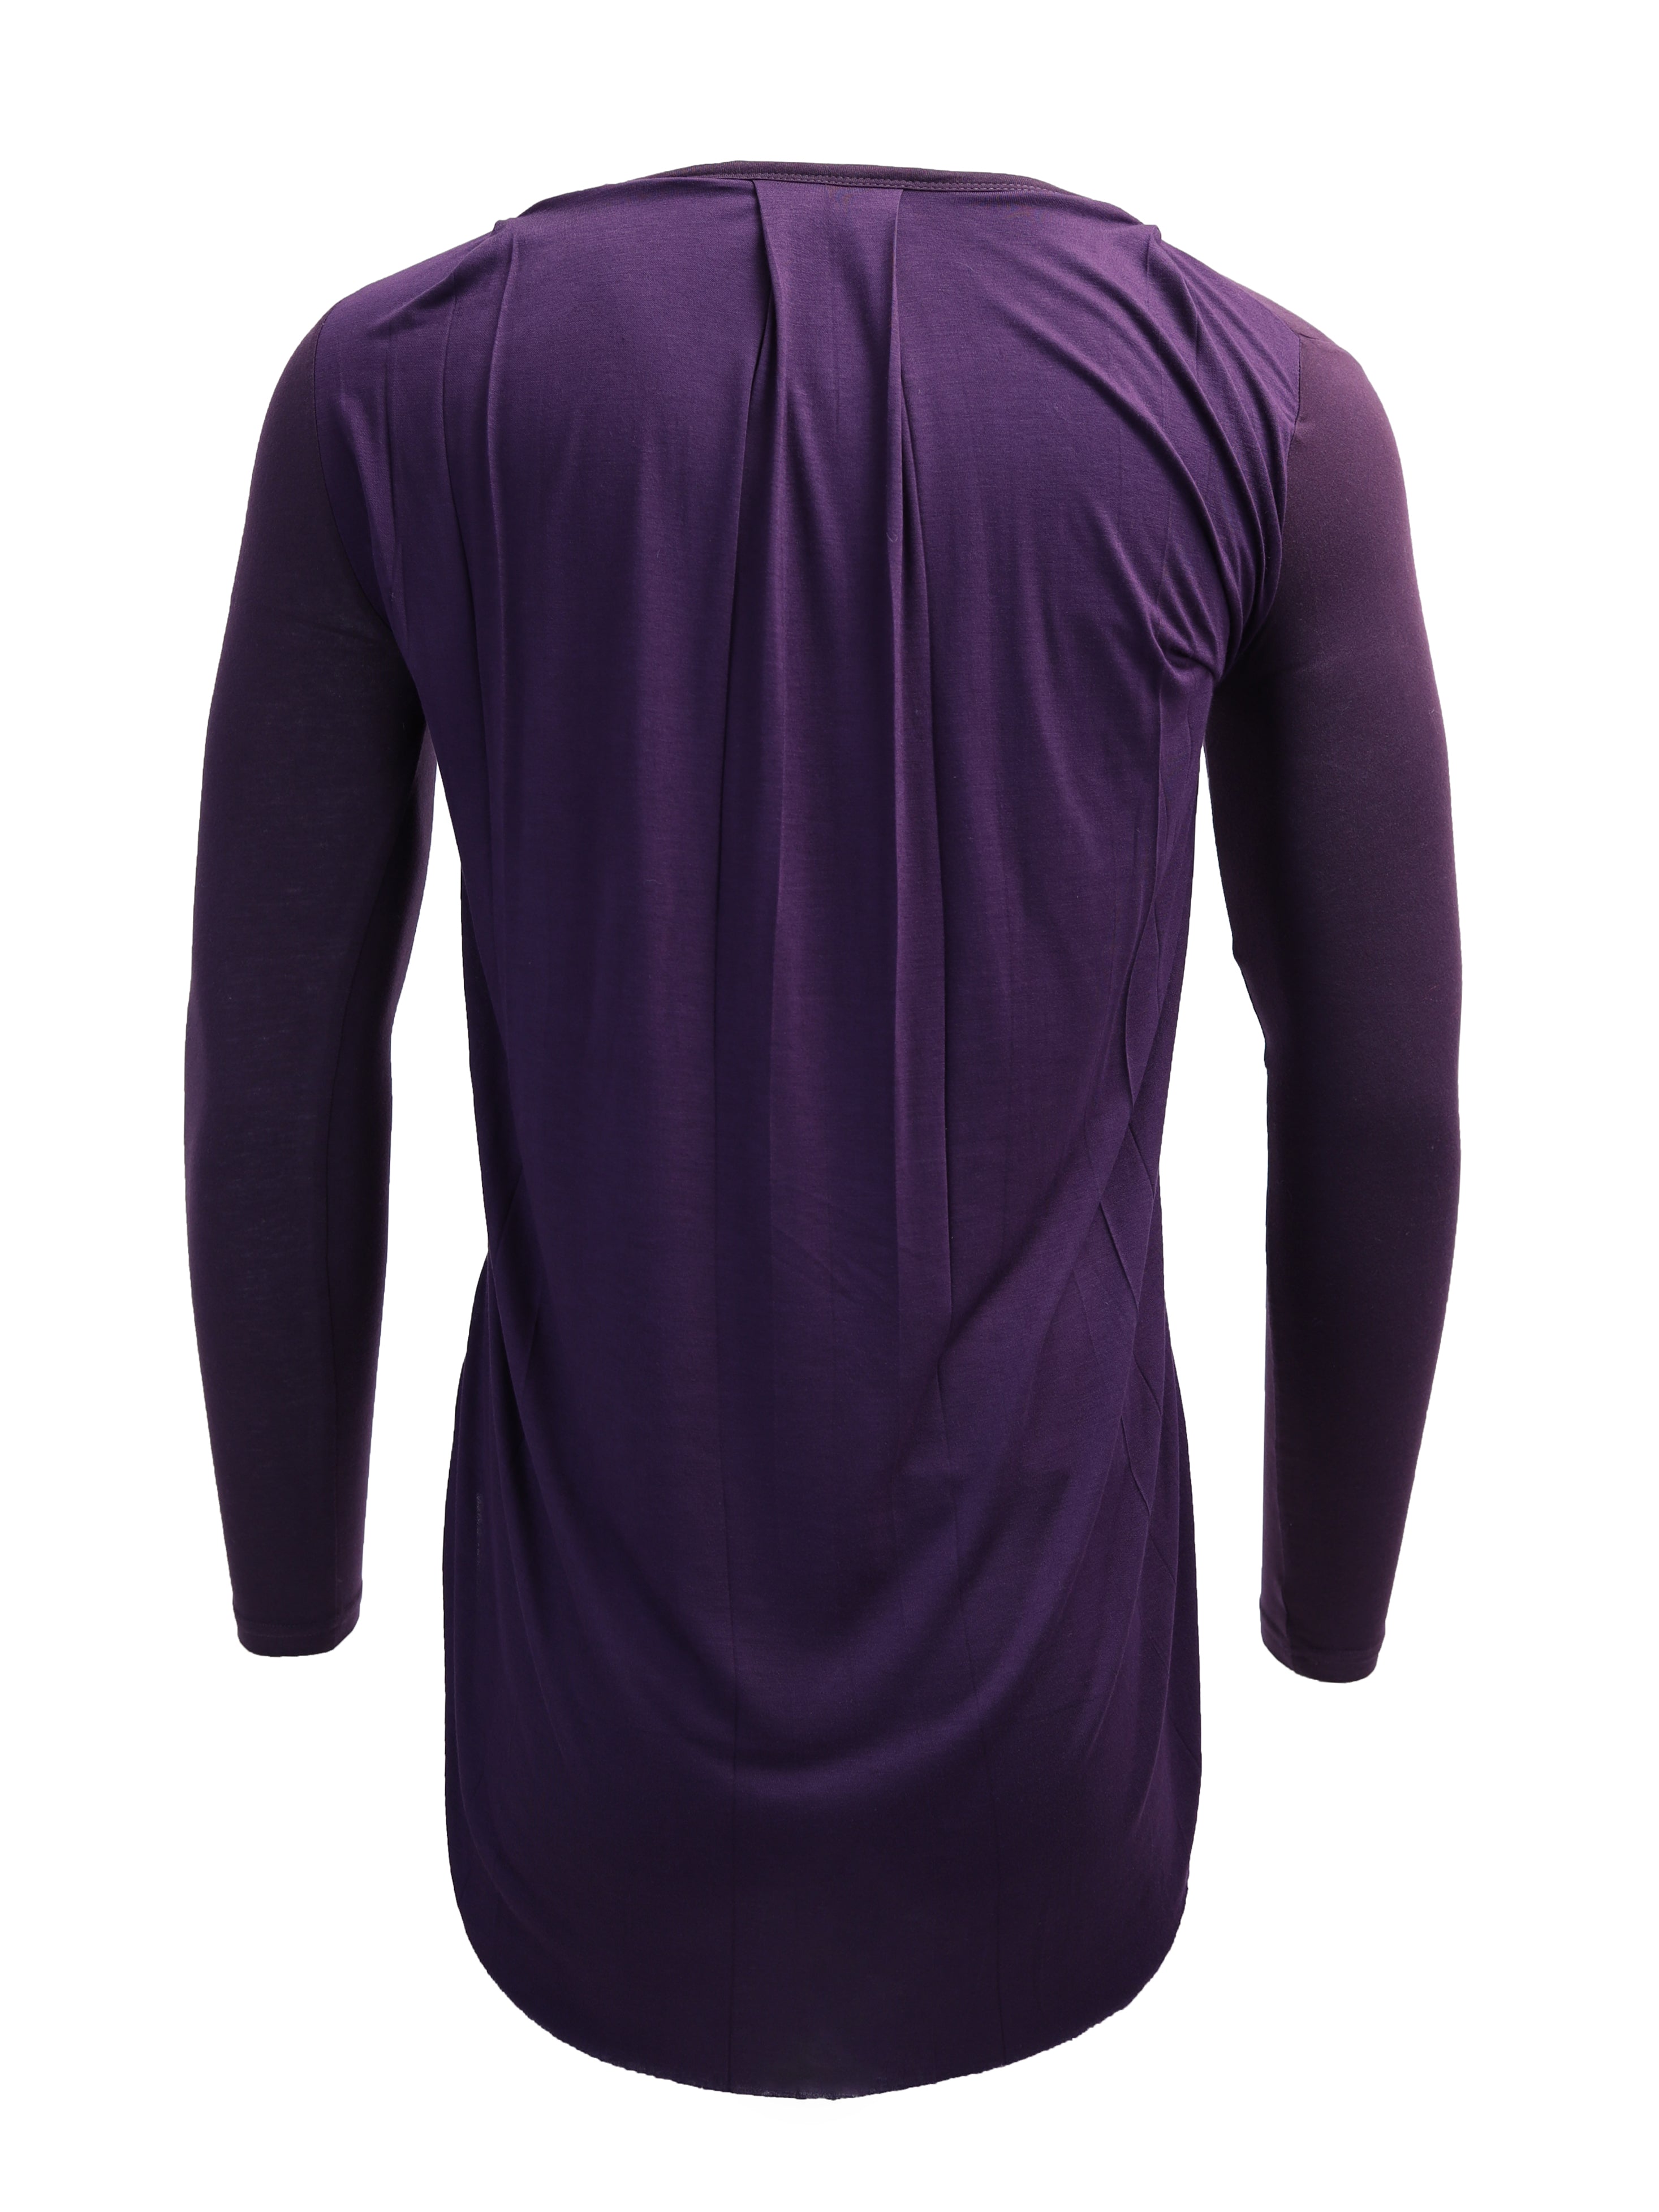 Asymmetric Tail Long Sleeve Top in Purple